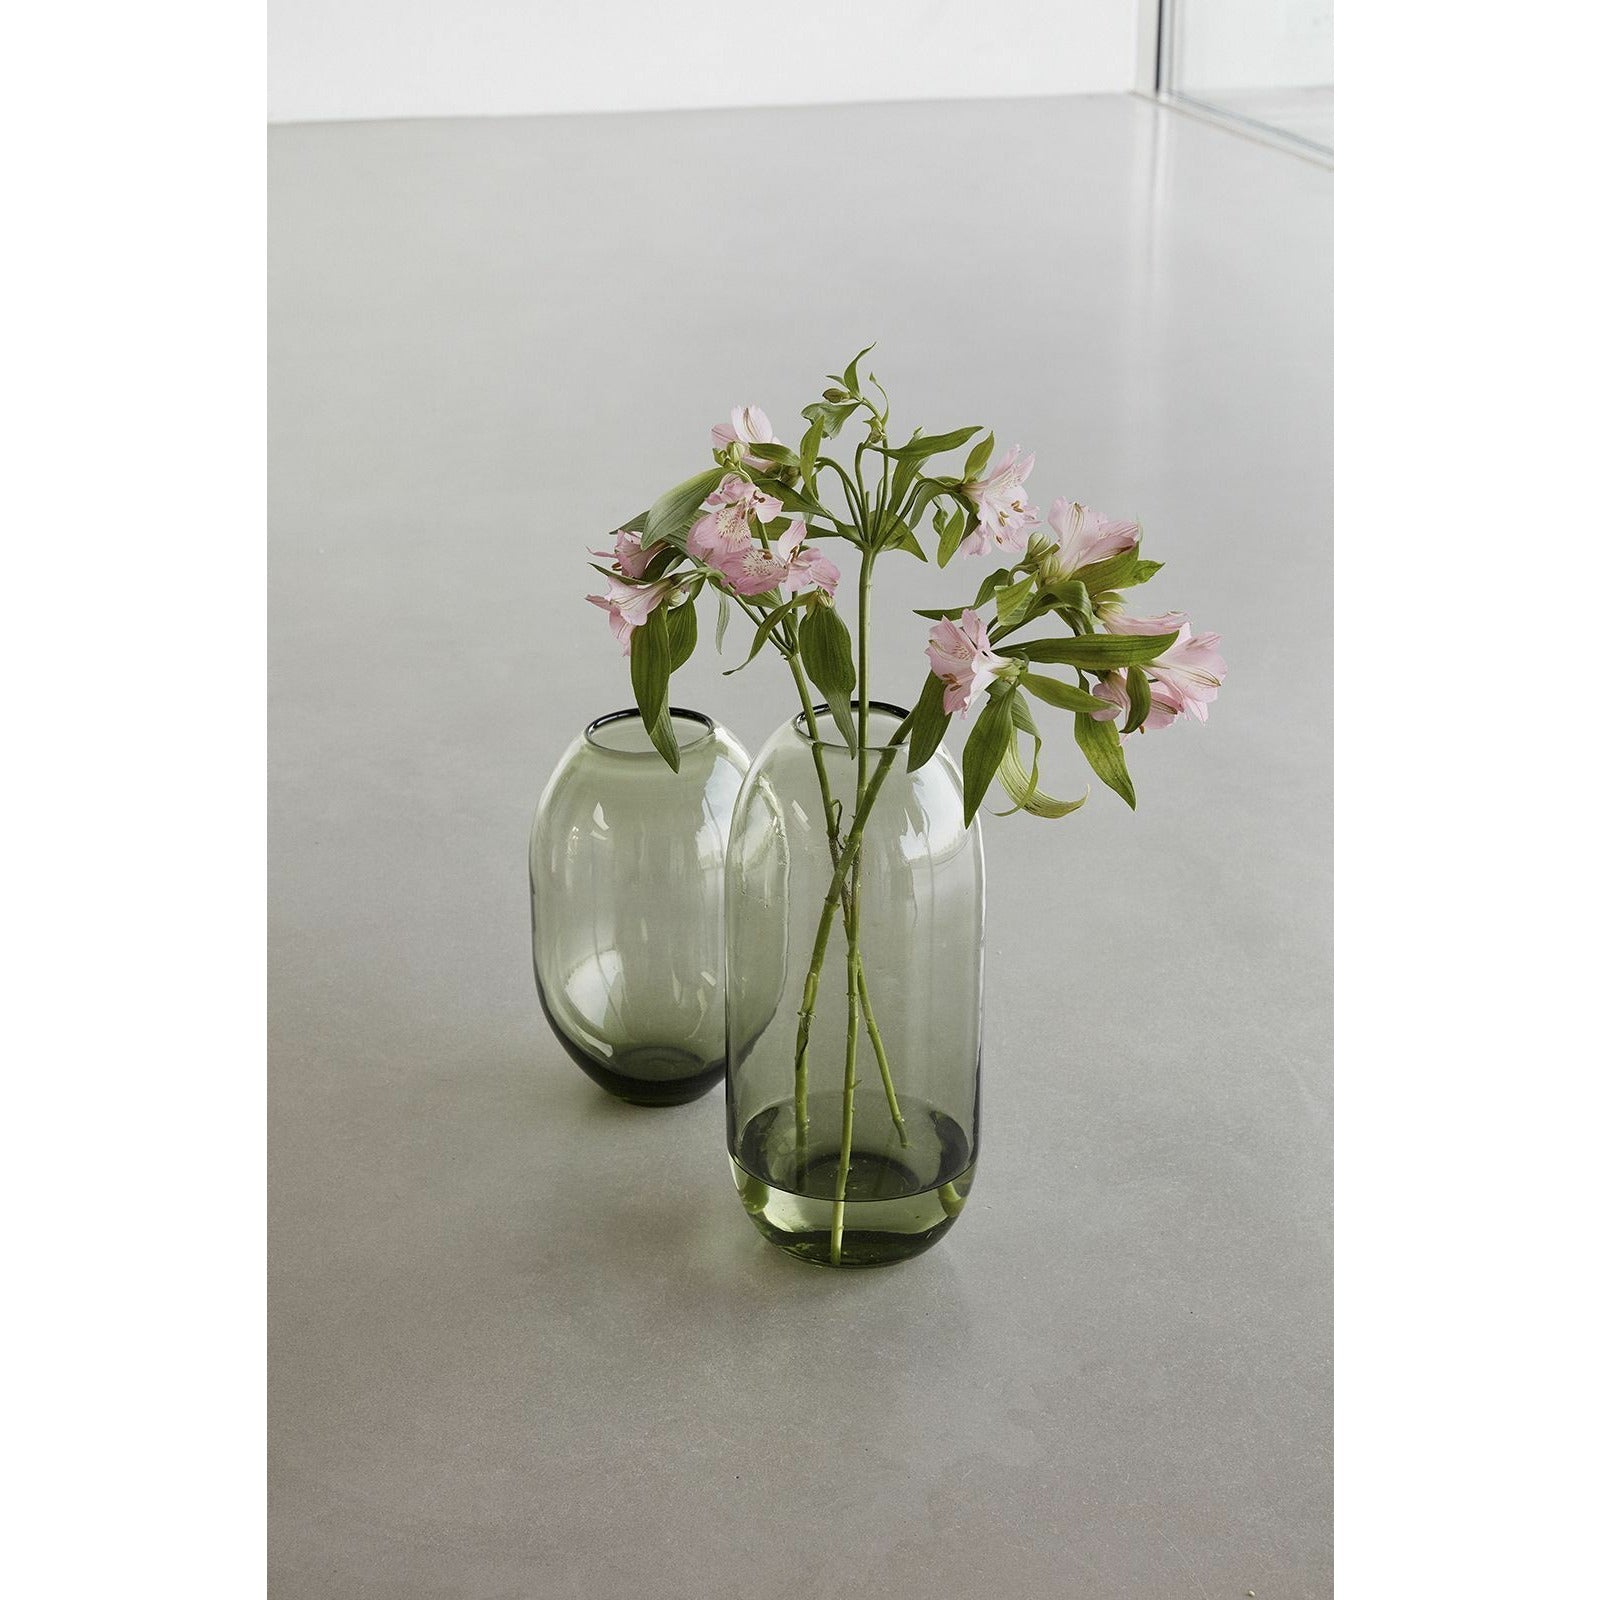 Hübsch Moss Vase Glass Green Set Of 2